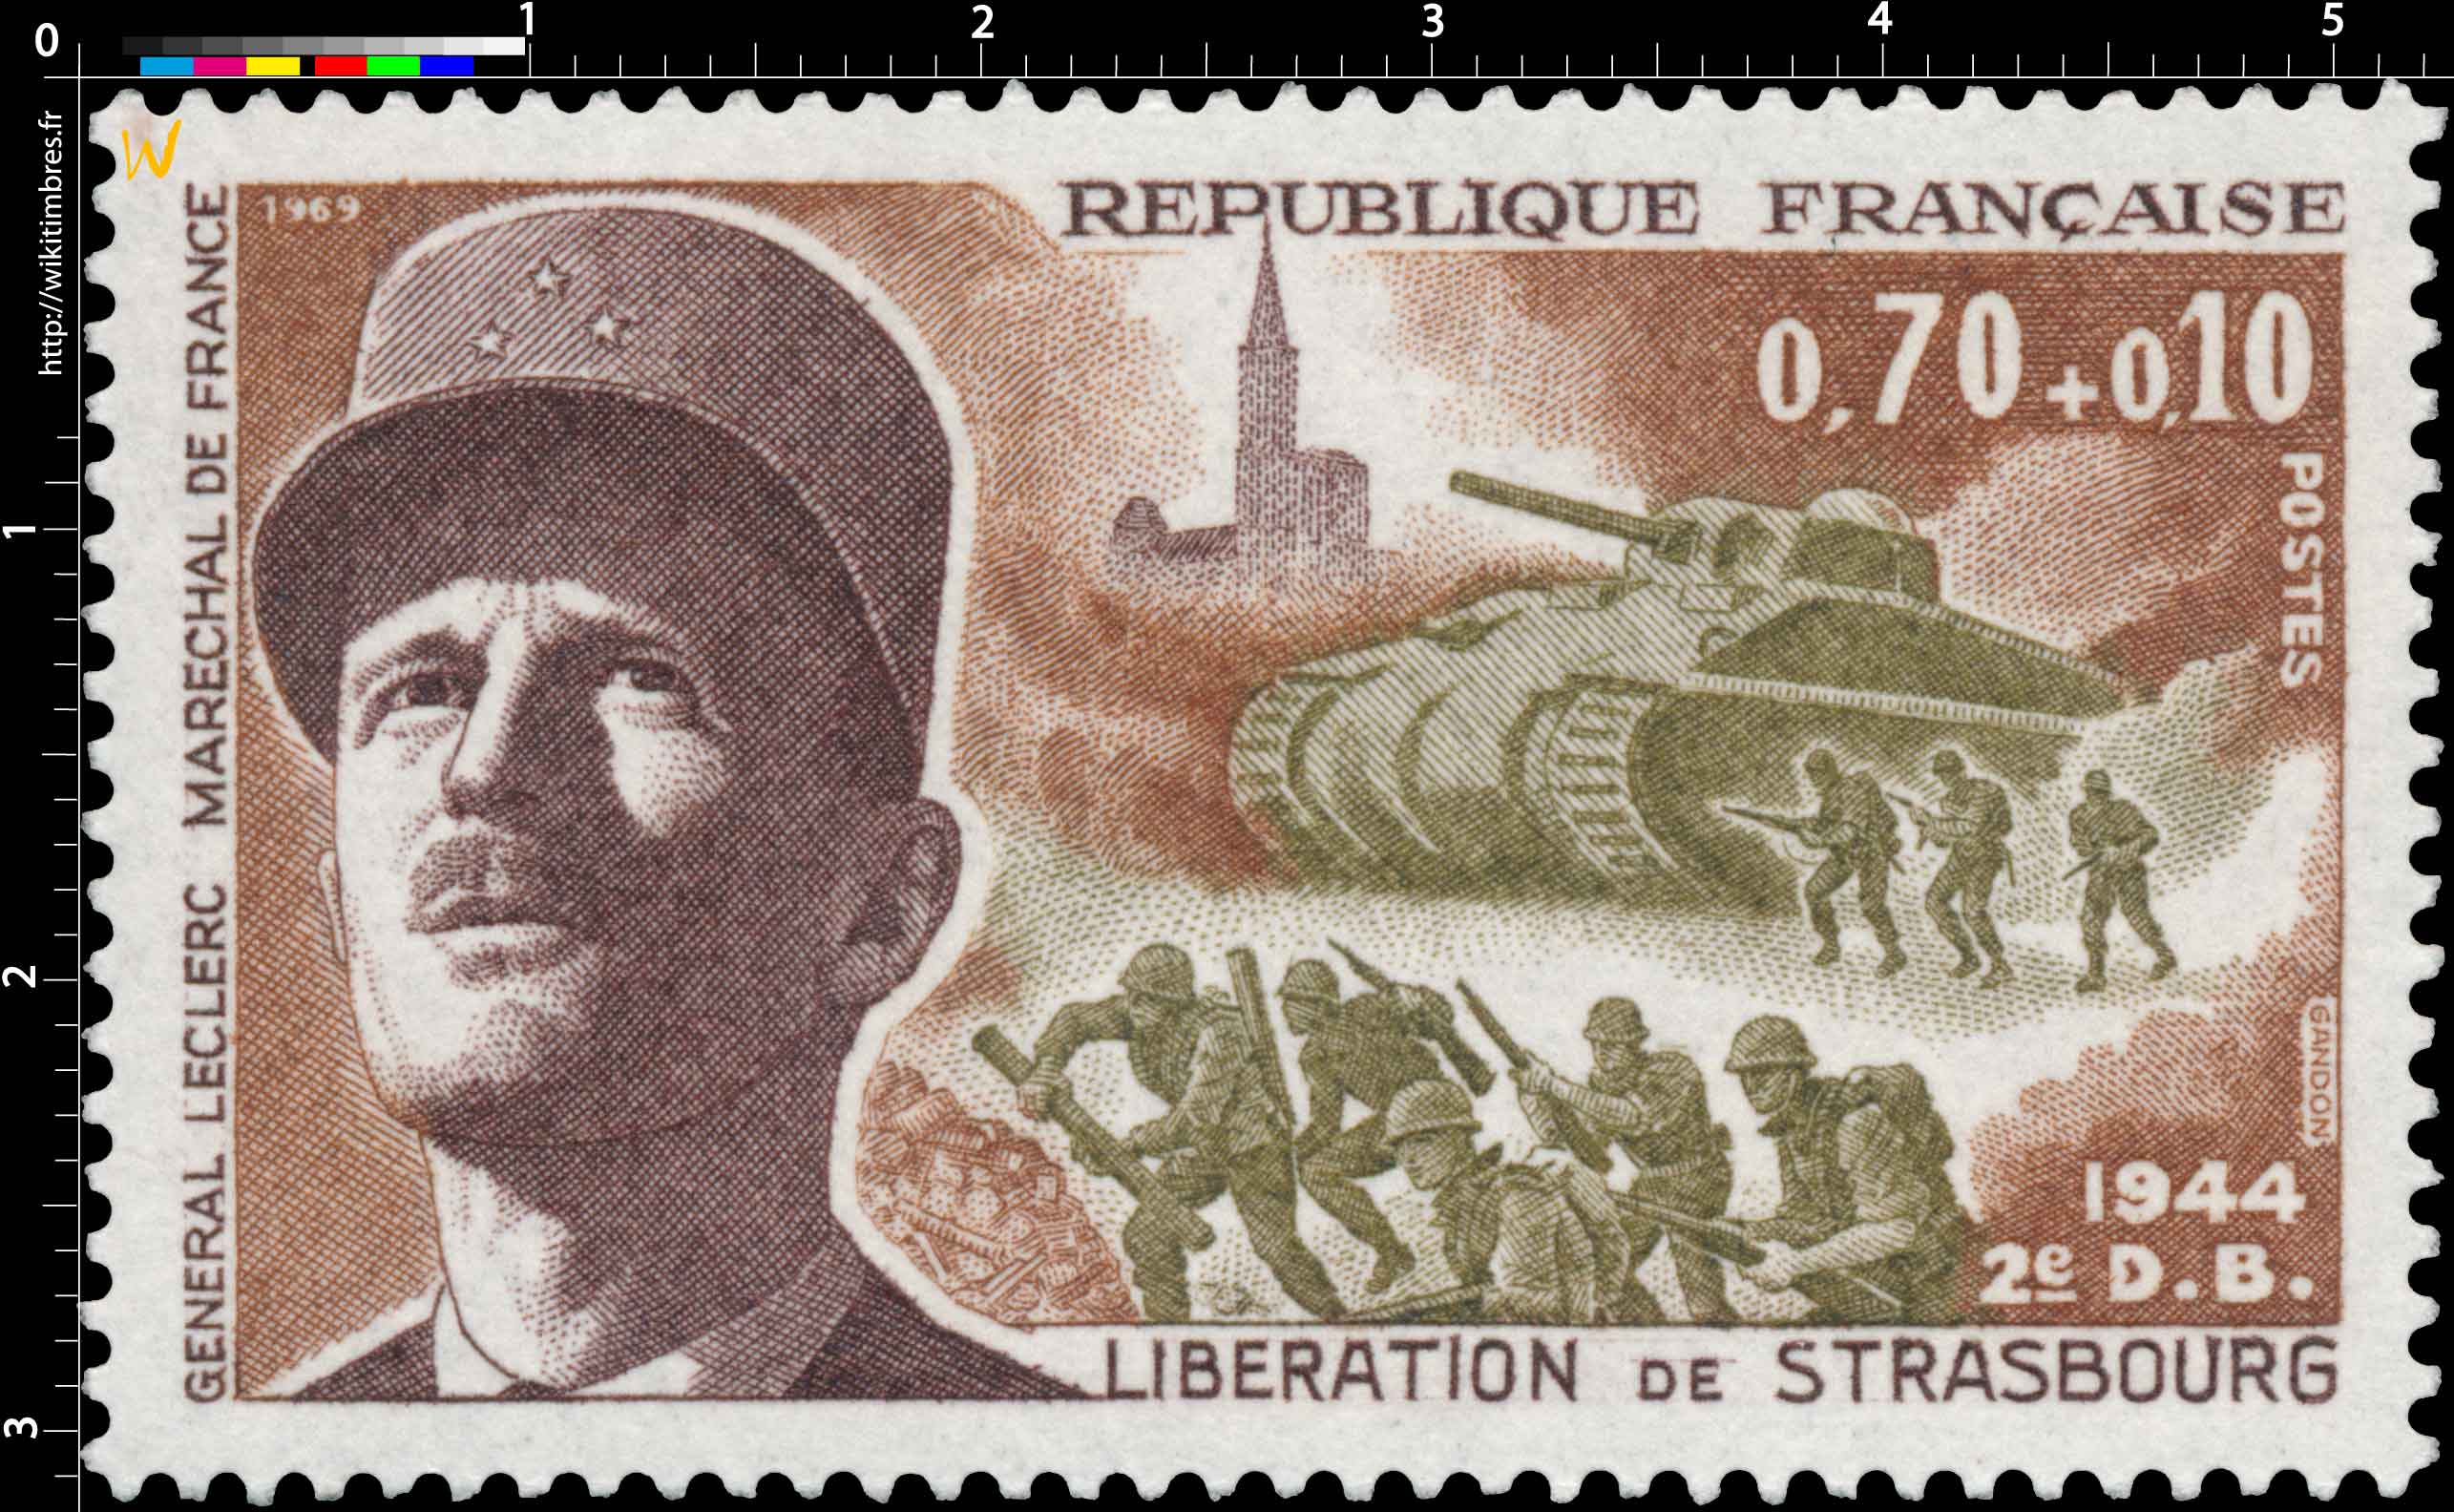 1969 LIBÉRATION DE STRASBOURG 1944 2e DB GENERAL LECLERC MARECHAL DE FRANCE